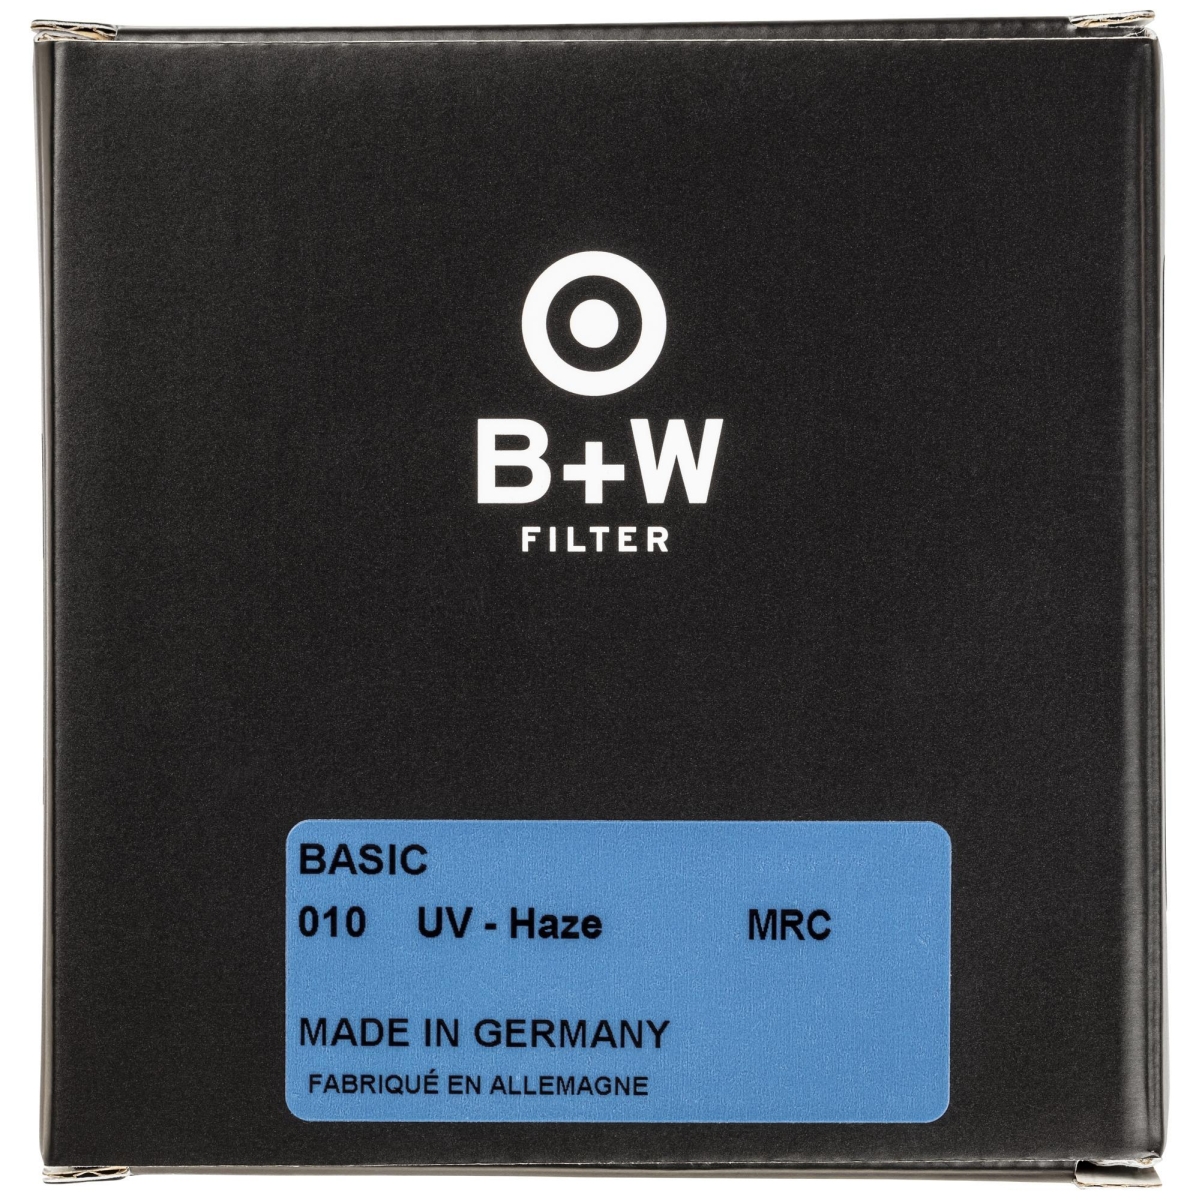 B+W UV 52 mm MRC Basic